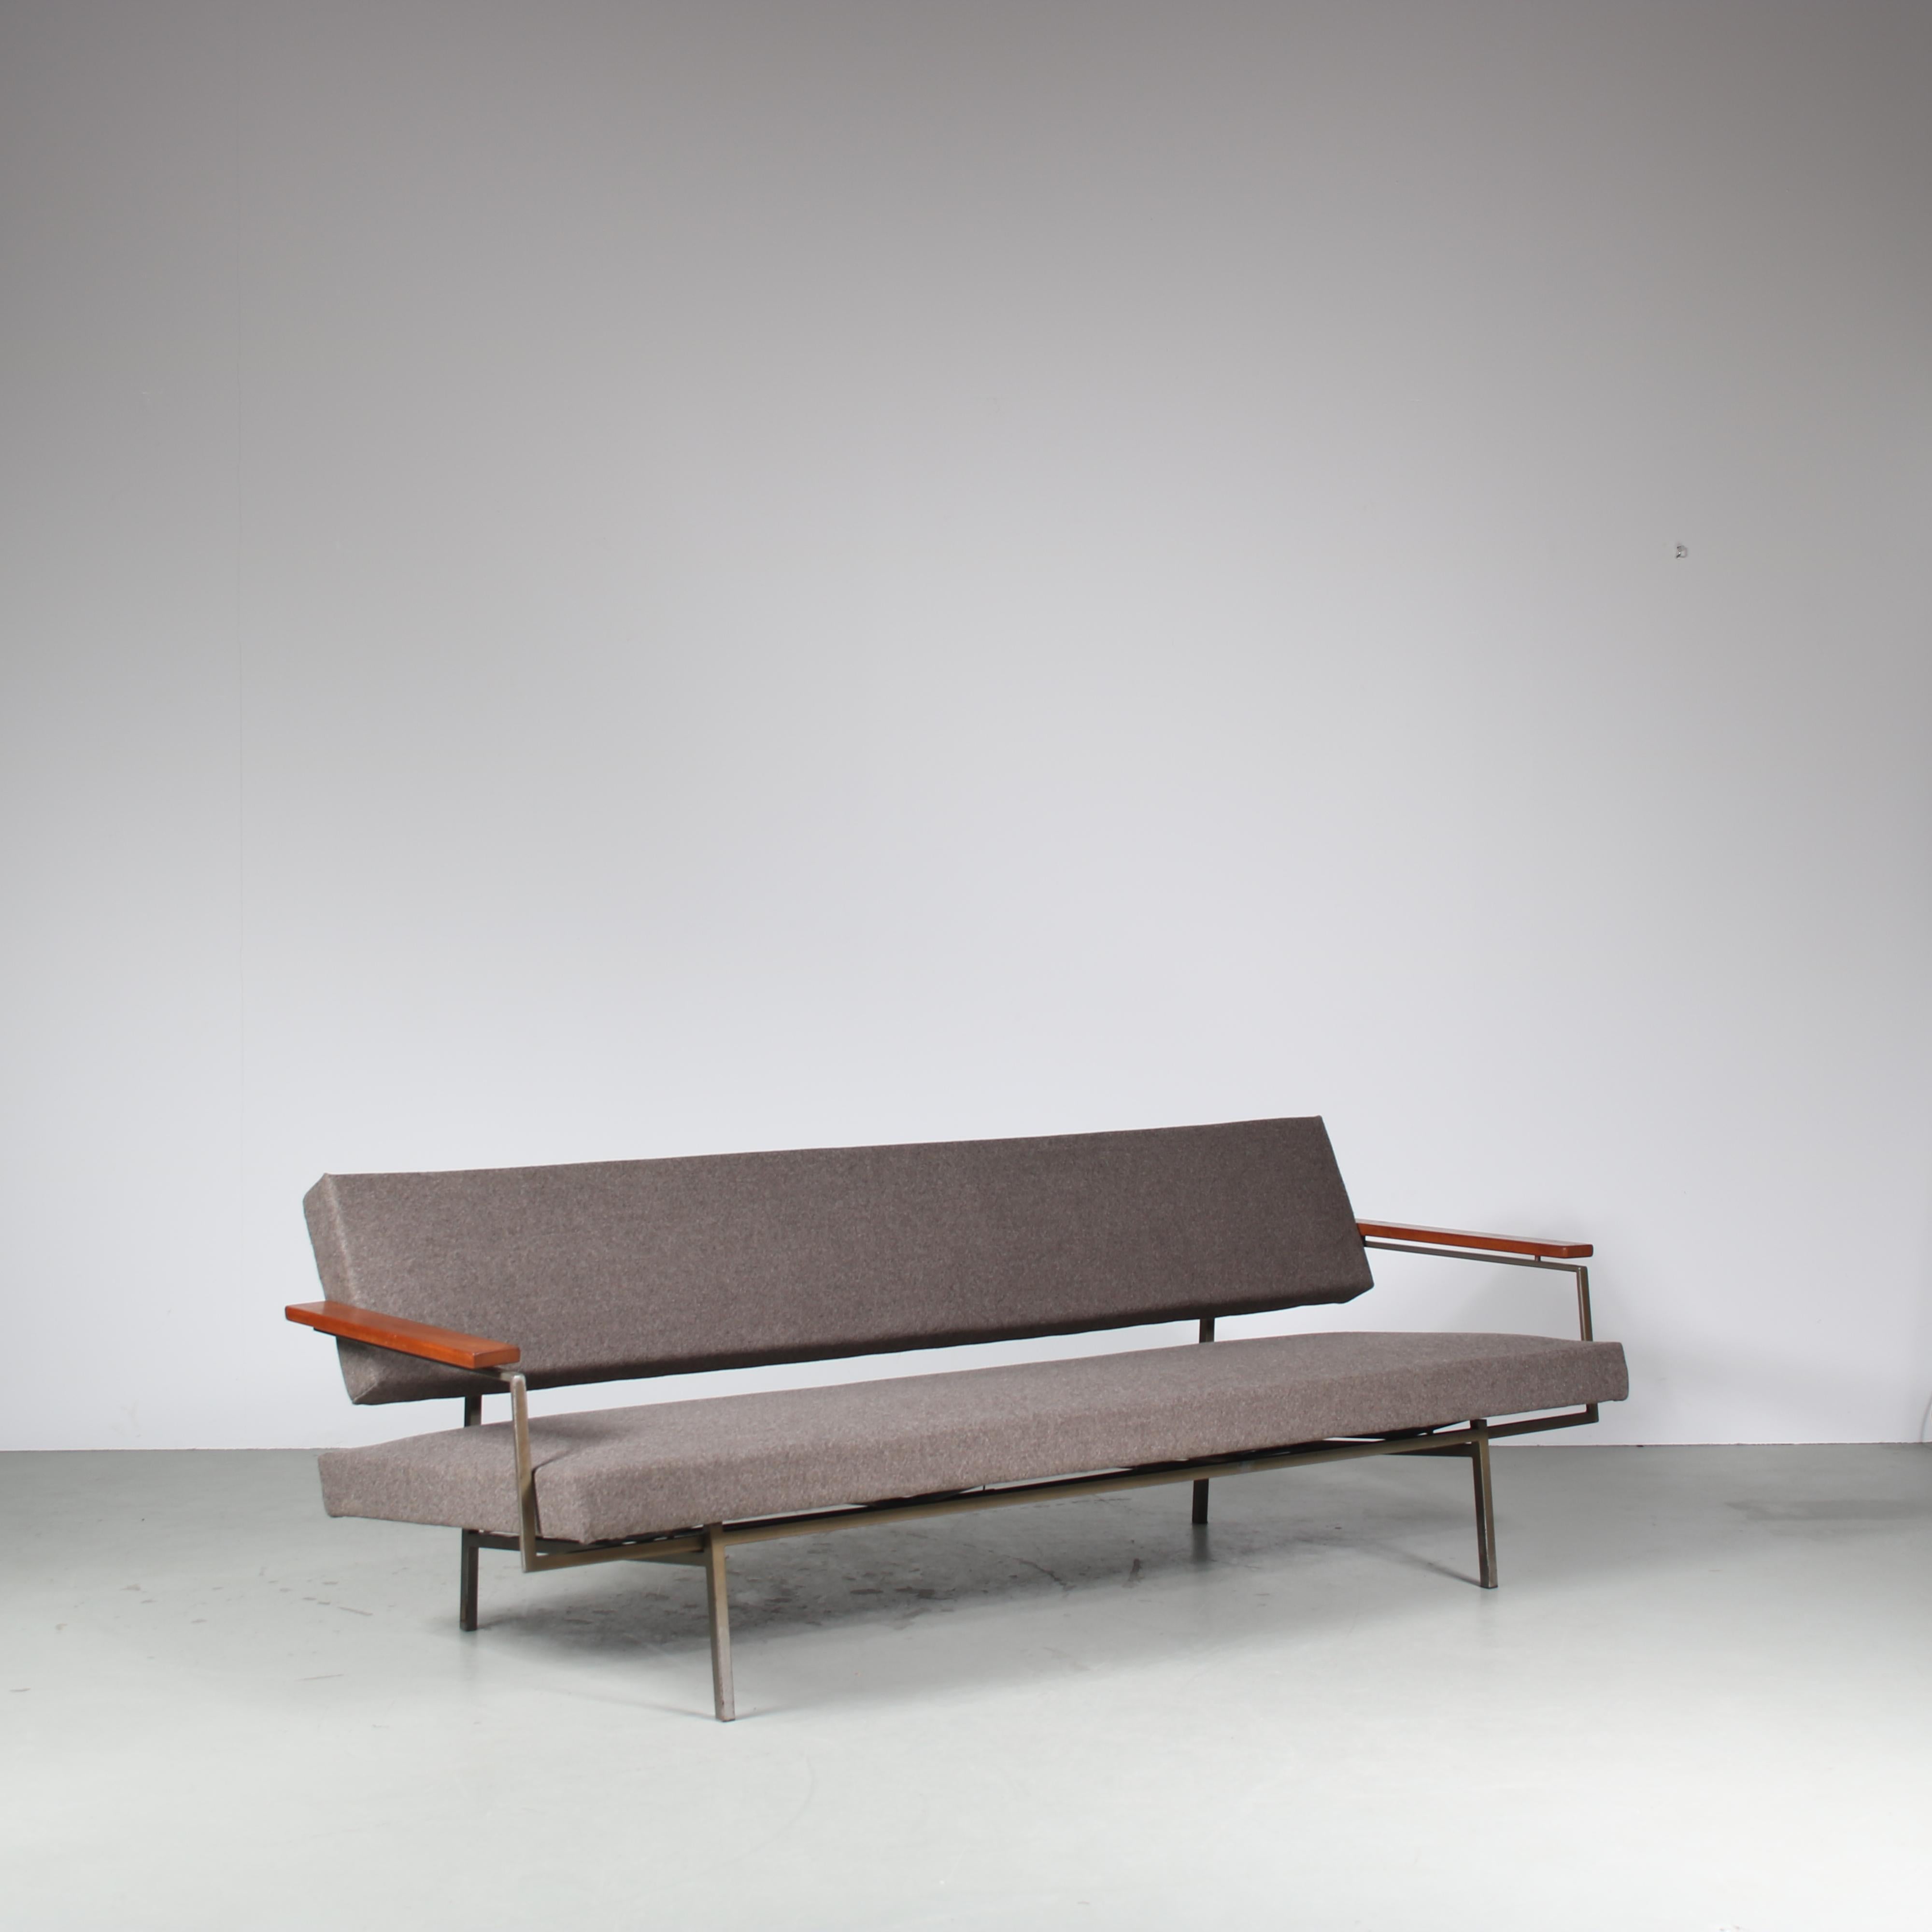 Un luxueux canapé-lit conçu par Rob Parry, fabriqué par Gelderland aux Pays-Bas vers 1960.

Ce canapé accrocheur est doté d'une belle base en acier, d'accoudoirs en bois brun chaud et est nouvellement revêtu d'un tissu gris de haute qualité. Cette